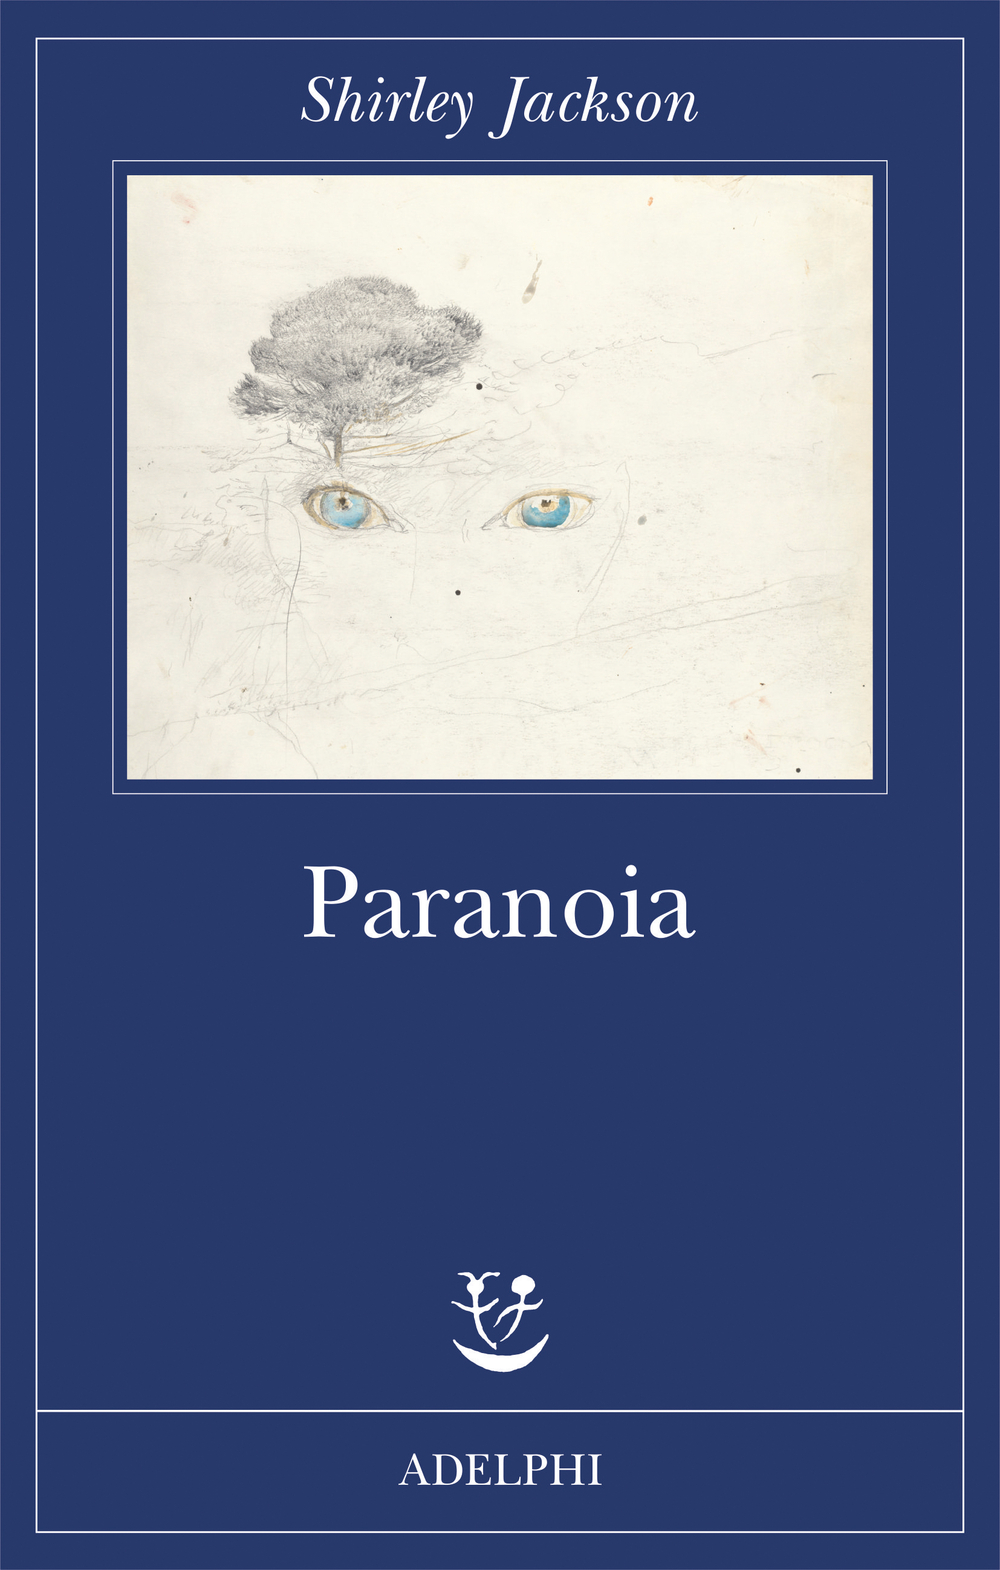 Shirley Jackson, “Paranoia”, Adelphi (2018)